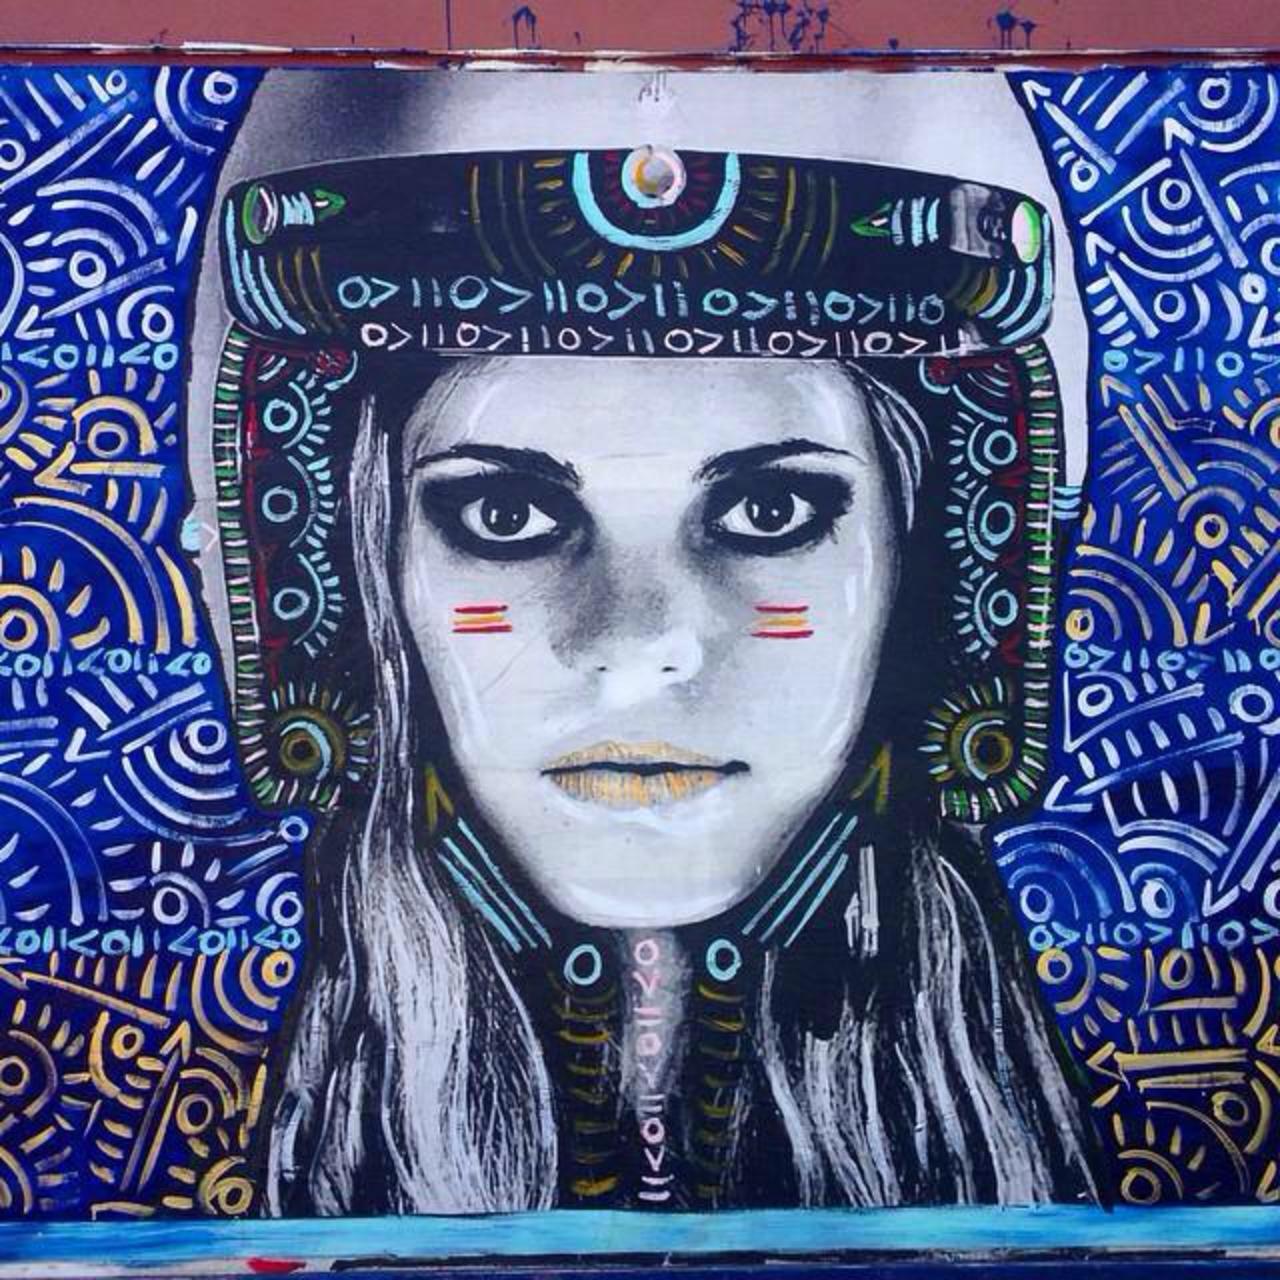 Street Art by Kelcey Fisher in LA
Photo by djcatnap

#art #arte #graffiti #streetart http://t.co/DdpuB4XBE5